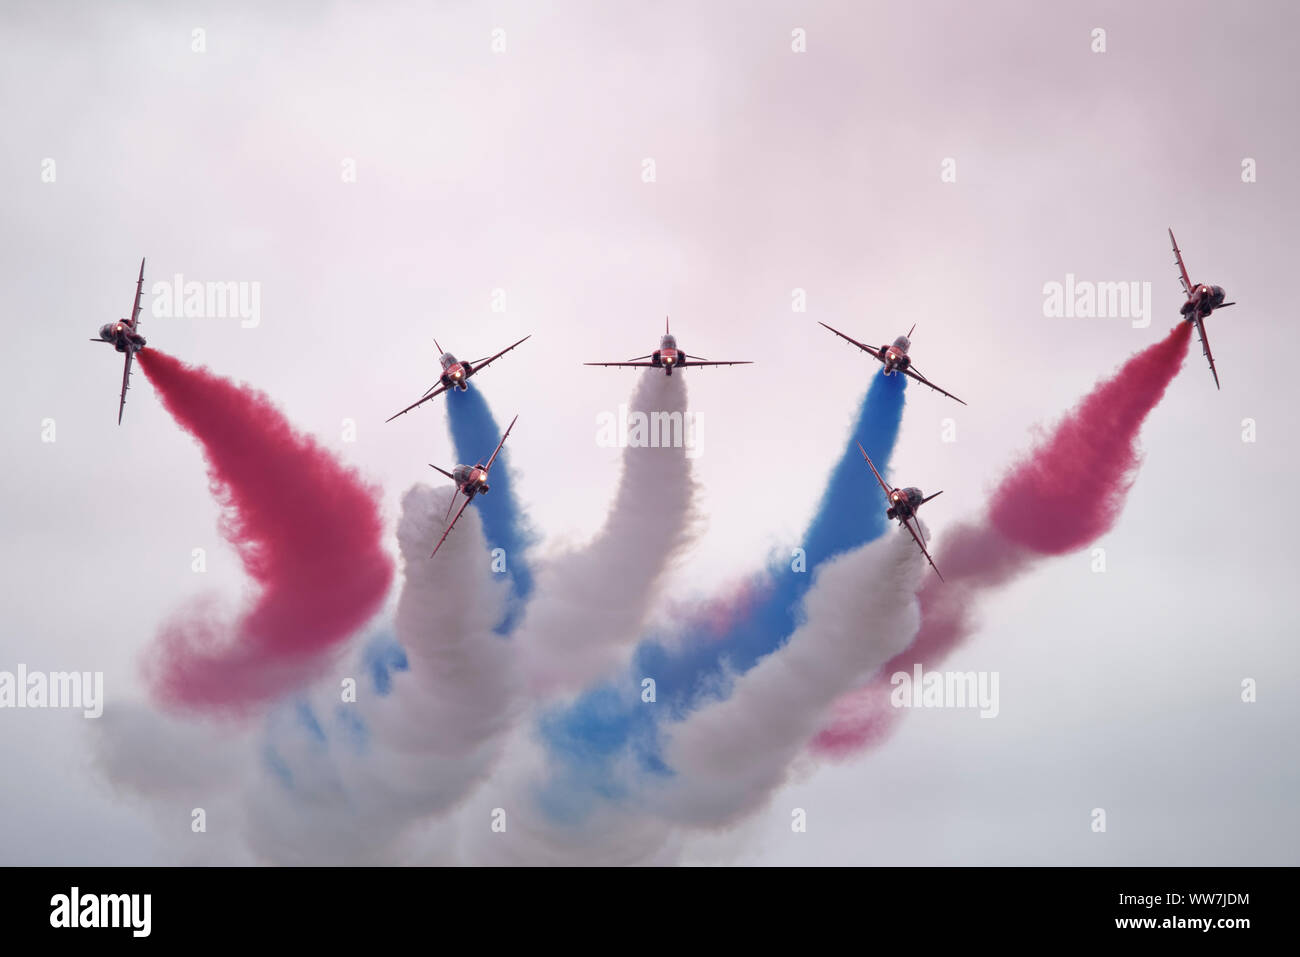 La Royal Air Force britannique des flèches rouges Aerobatic Display Team effectuer leur manoeuvre à la pause Vixen Royal International Air Tattoo Banque D'Images